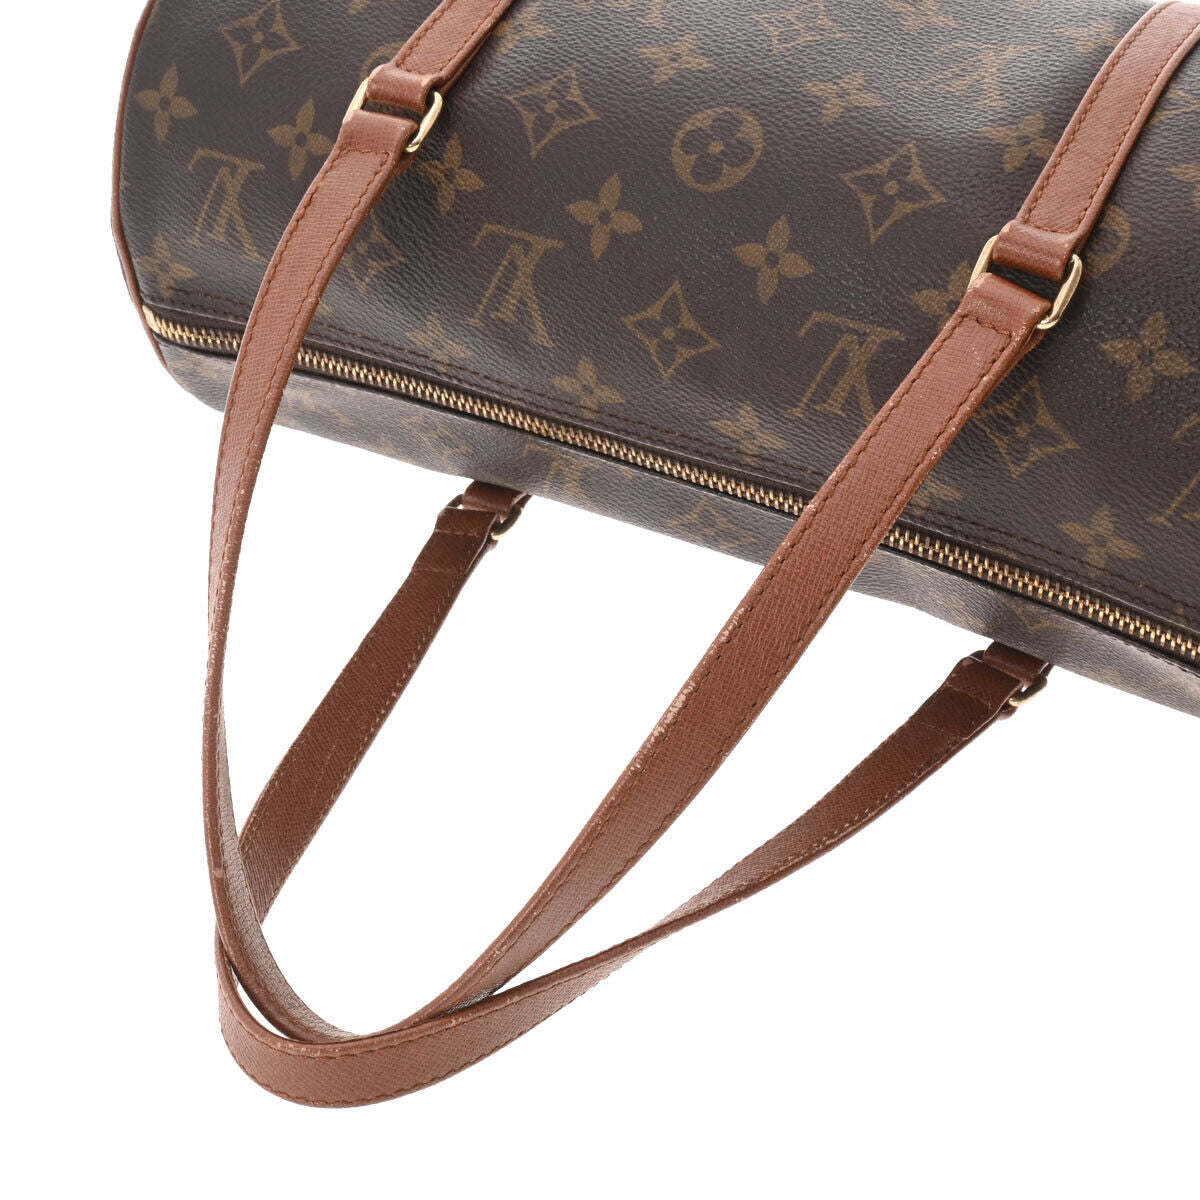 Authentic Vintage Louis Vuitton Papillon 30 Handbag